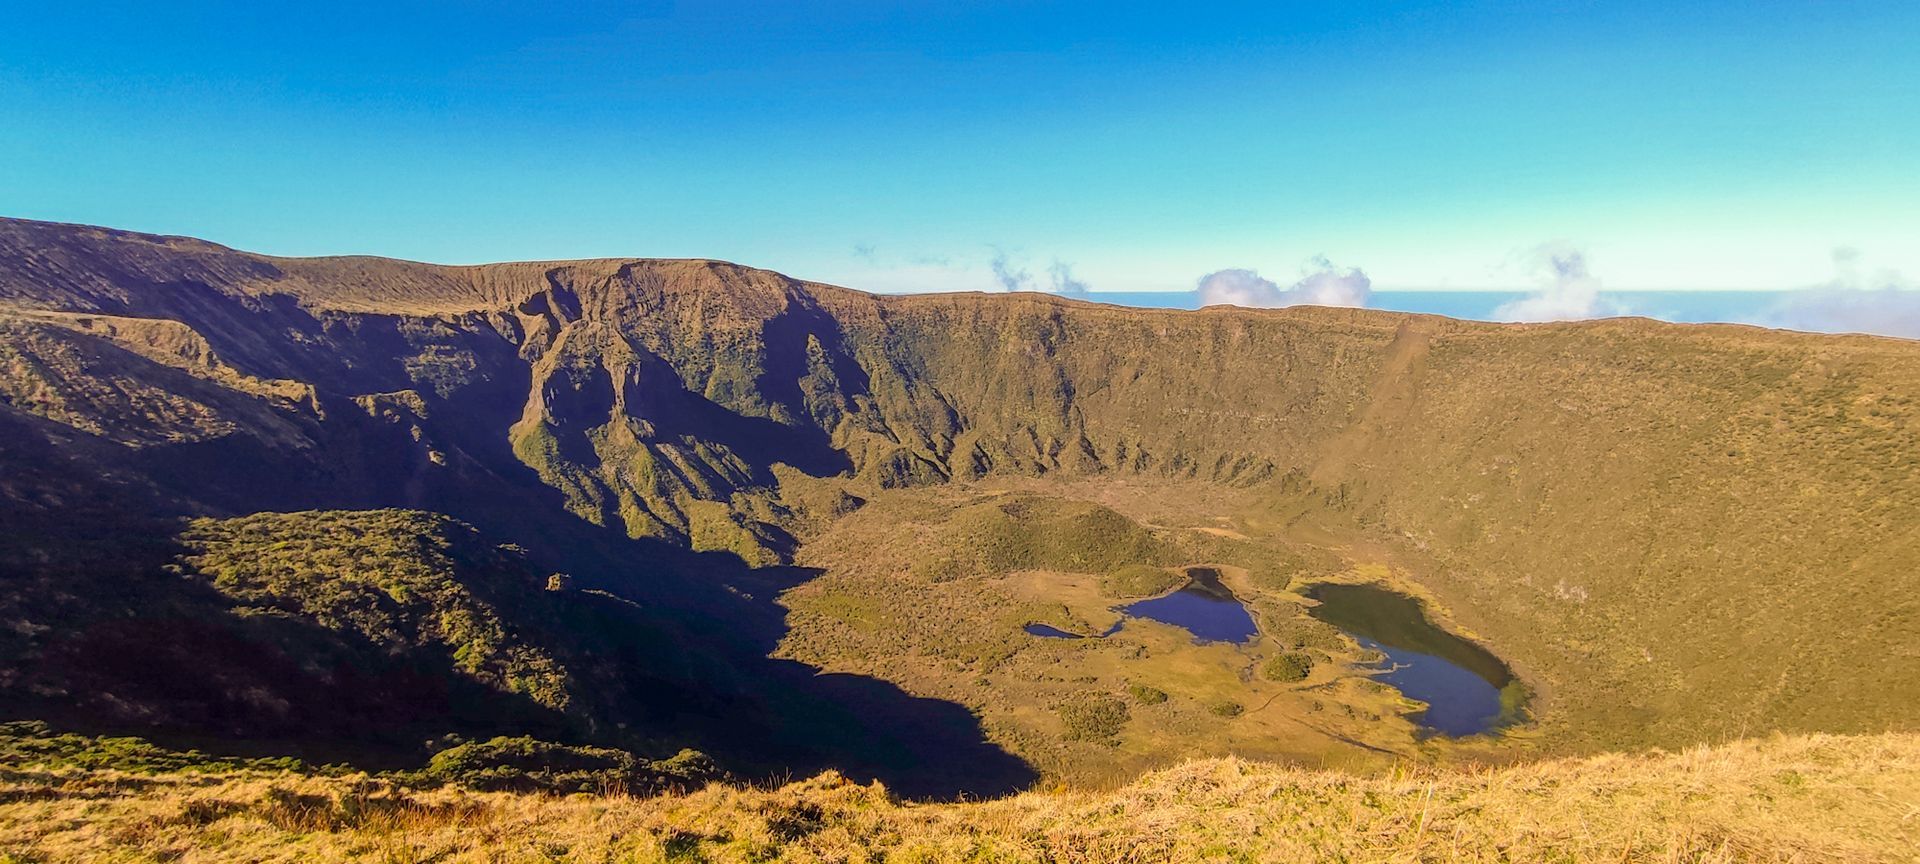 Visita à Caldeira do Faial nas nossas Excursões, Tours e Visitas Guiadas de dia inteiro na ilha do Faial Açores.